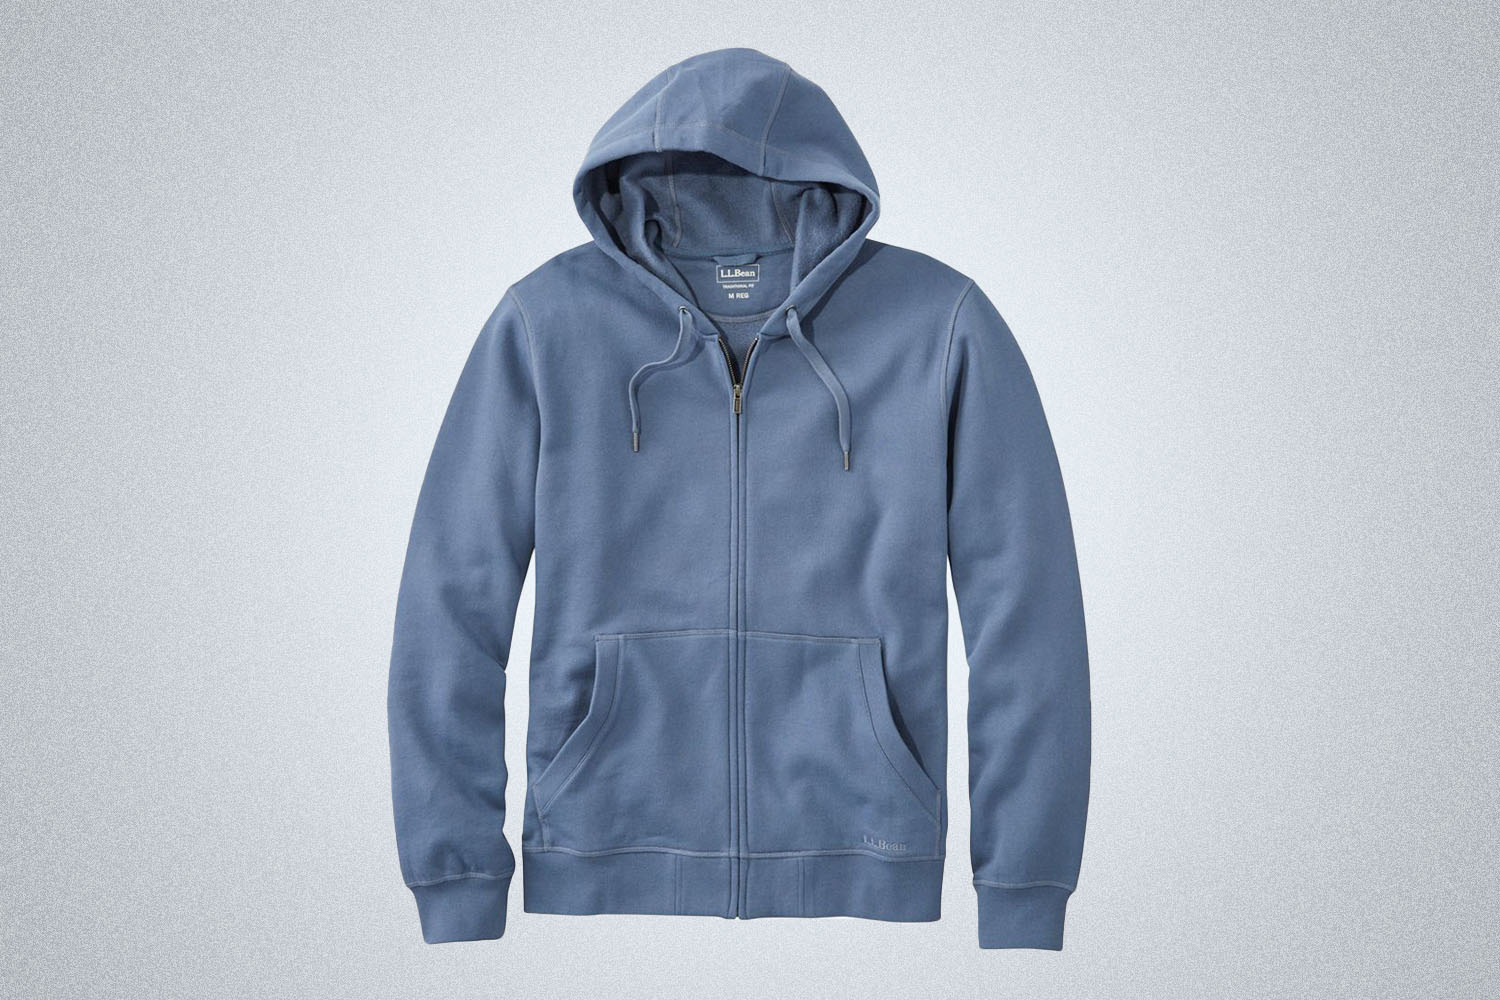 a fully zip blue hoodie